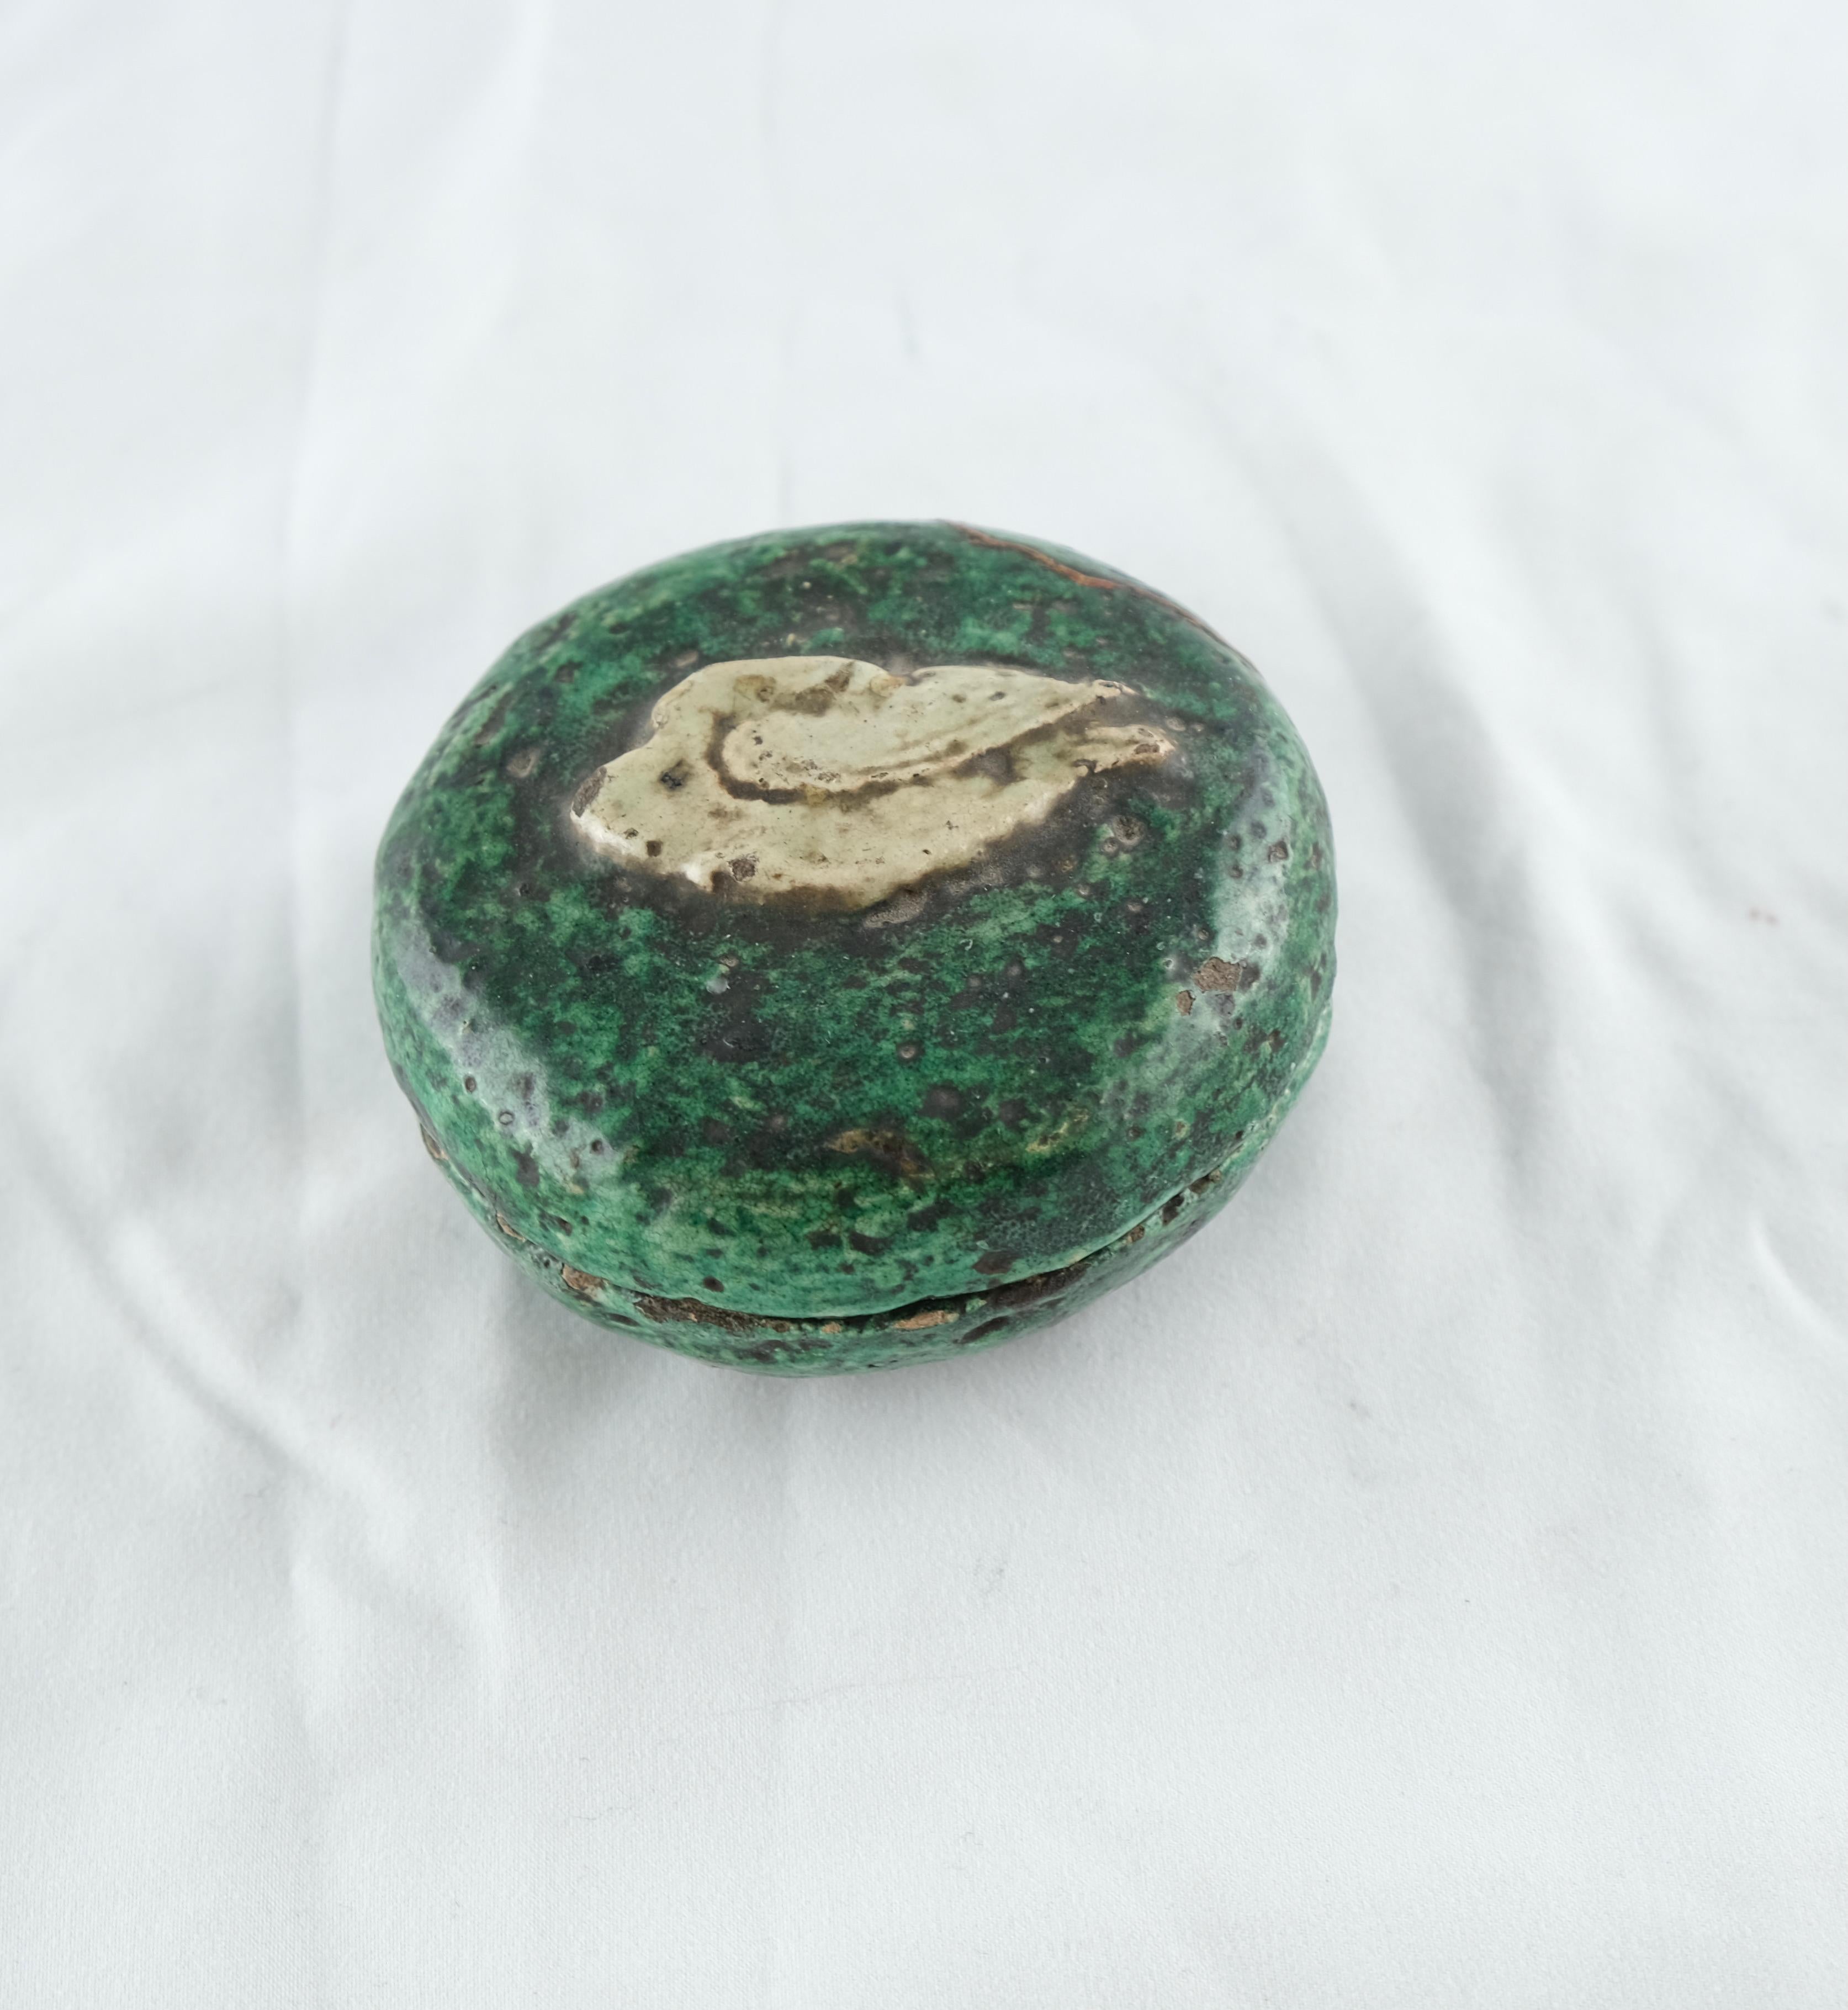 Eine kleine Schachtel mit Deckel. Steingutglasuren in grünen und weißen Farben. Mitte 19. Jh. Der Deckel hat das Motiv eines stilisierten Schwans.
Der Deckel mit einer Restaurierung.